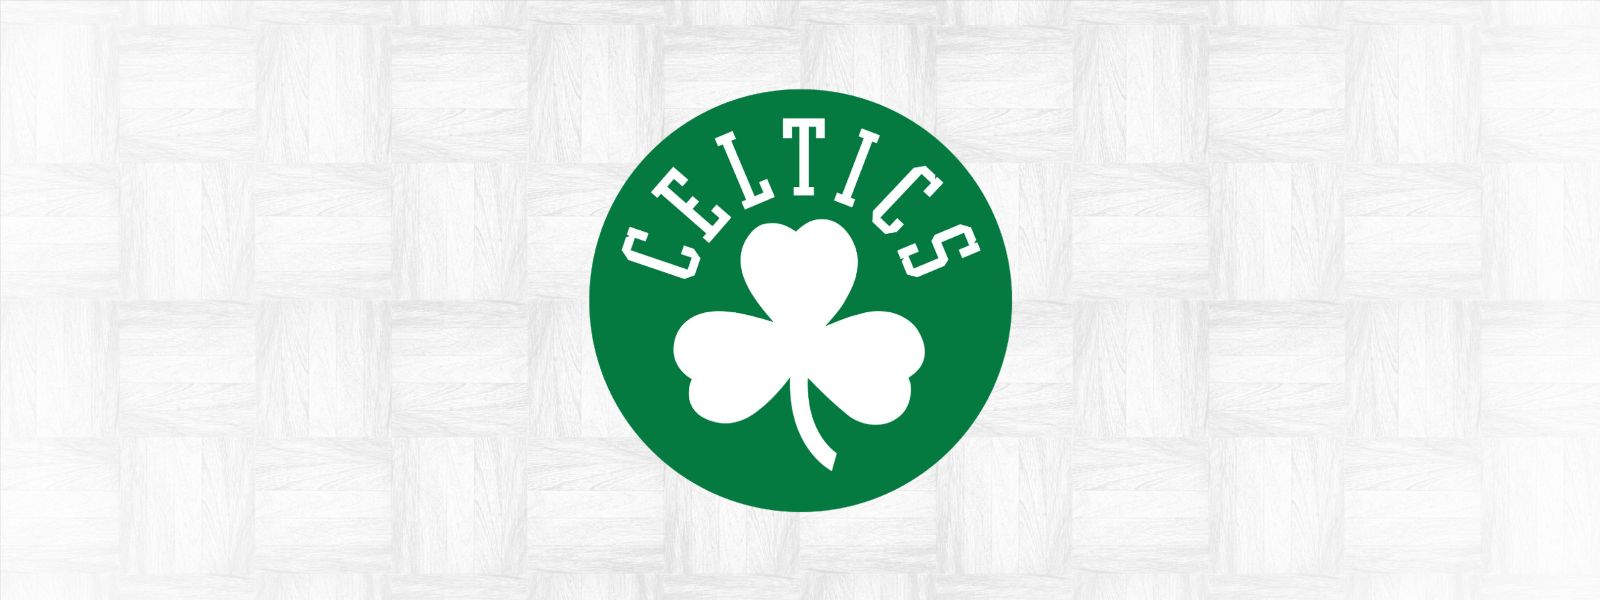 More Info for Celtics vs. Suns